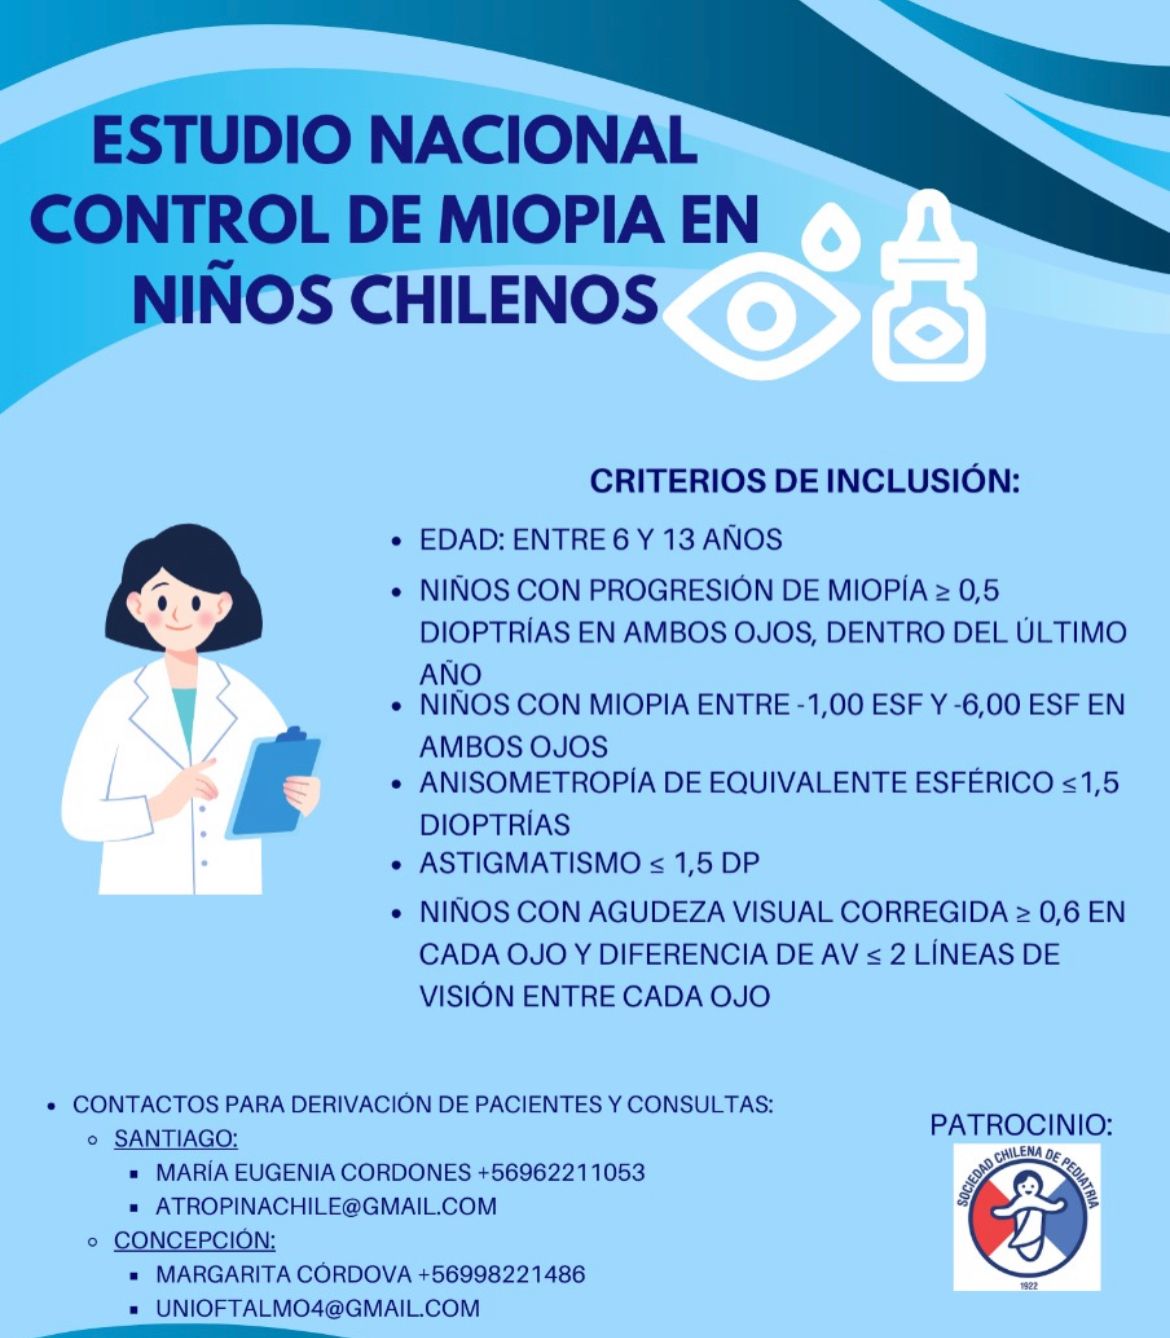 Estudio nacional control de miopia en niños chilenos